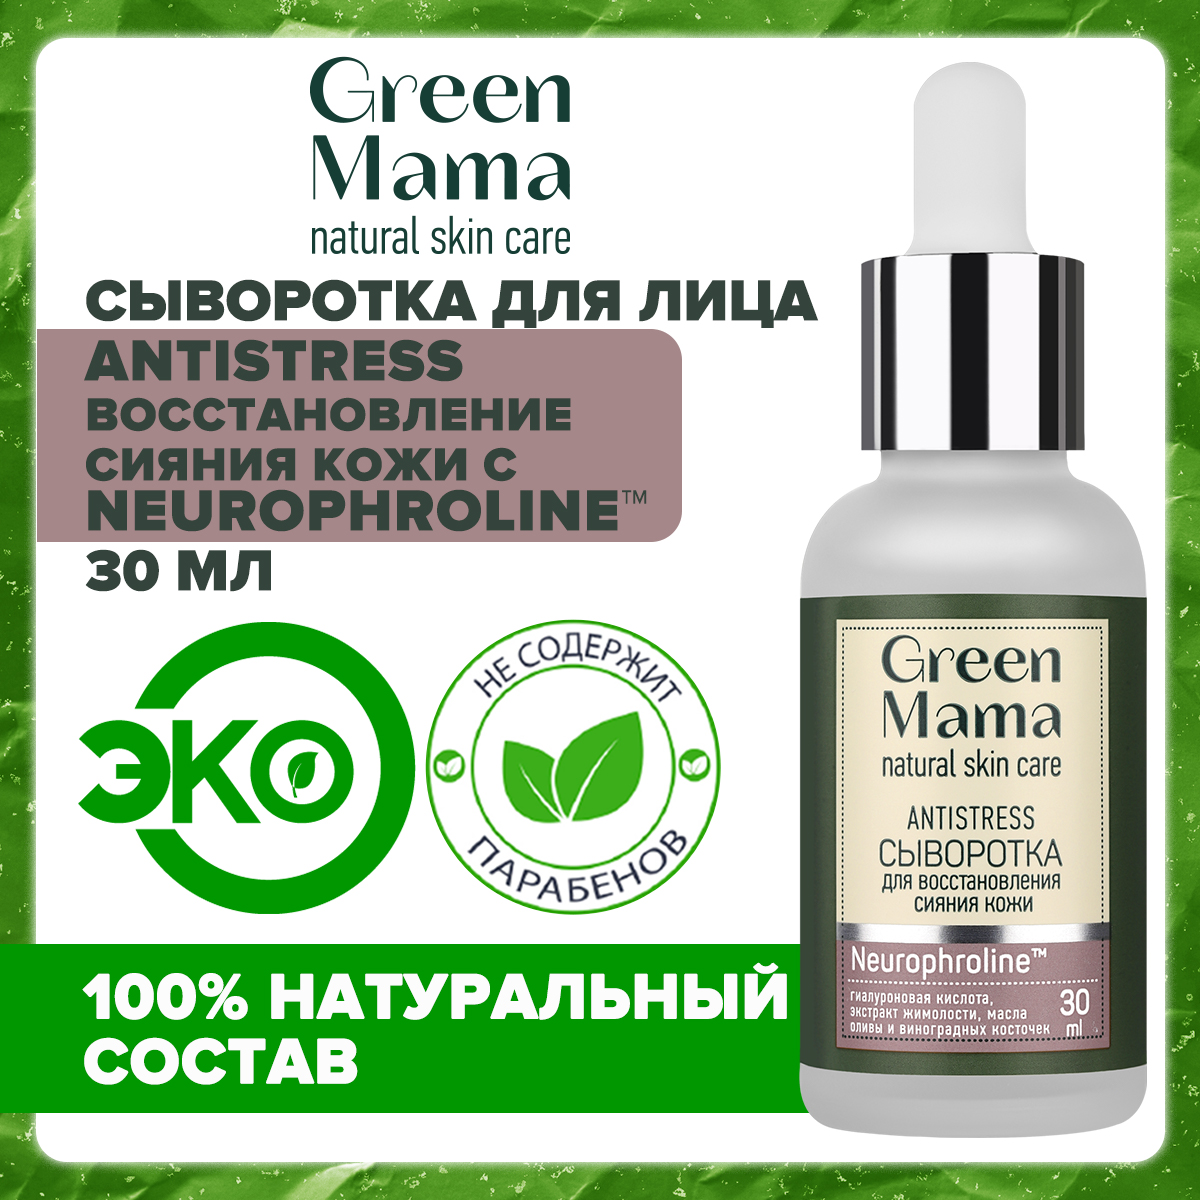 Сыворотка для лица Green Mama Antistress для восстановления сияния кожи, 30 мл bouticle защитная сыворотка на основе комплекса натуральных масел 100 0